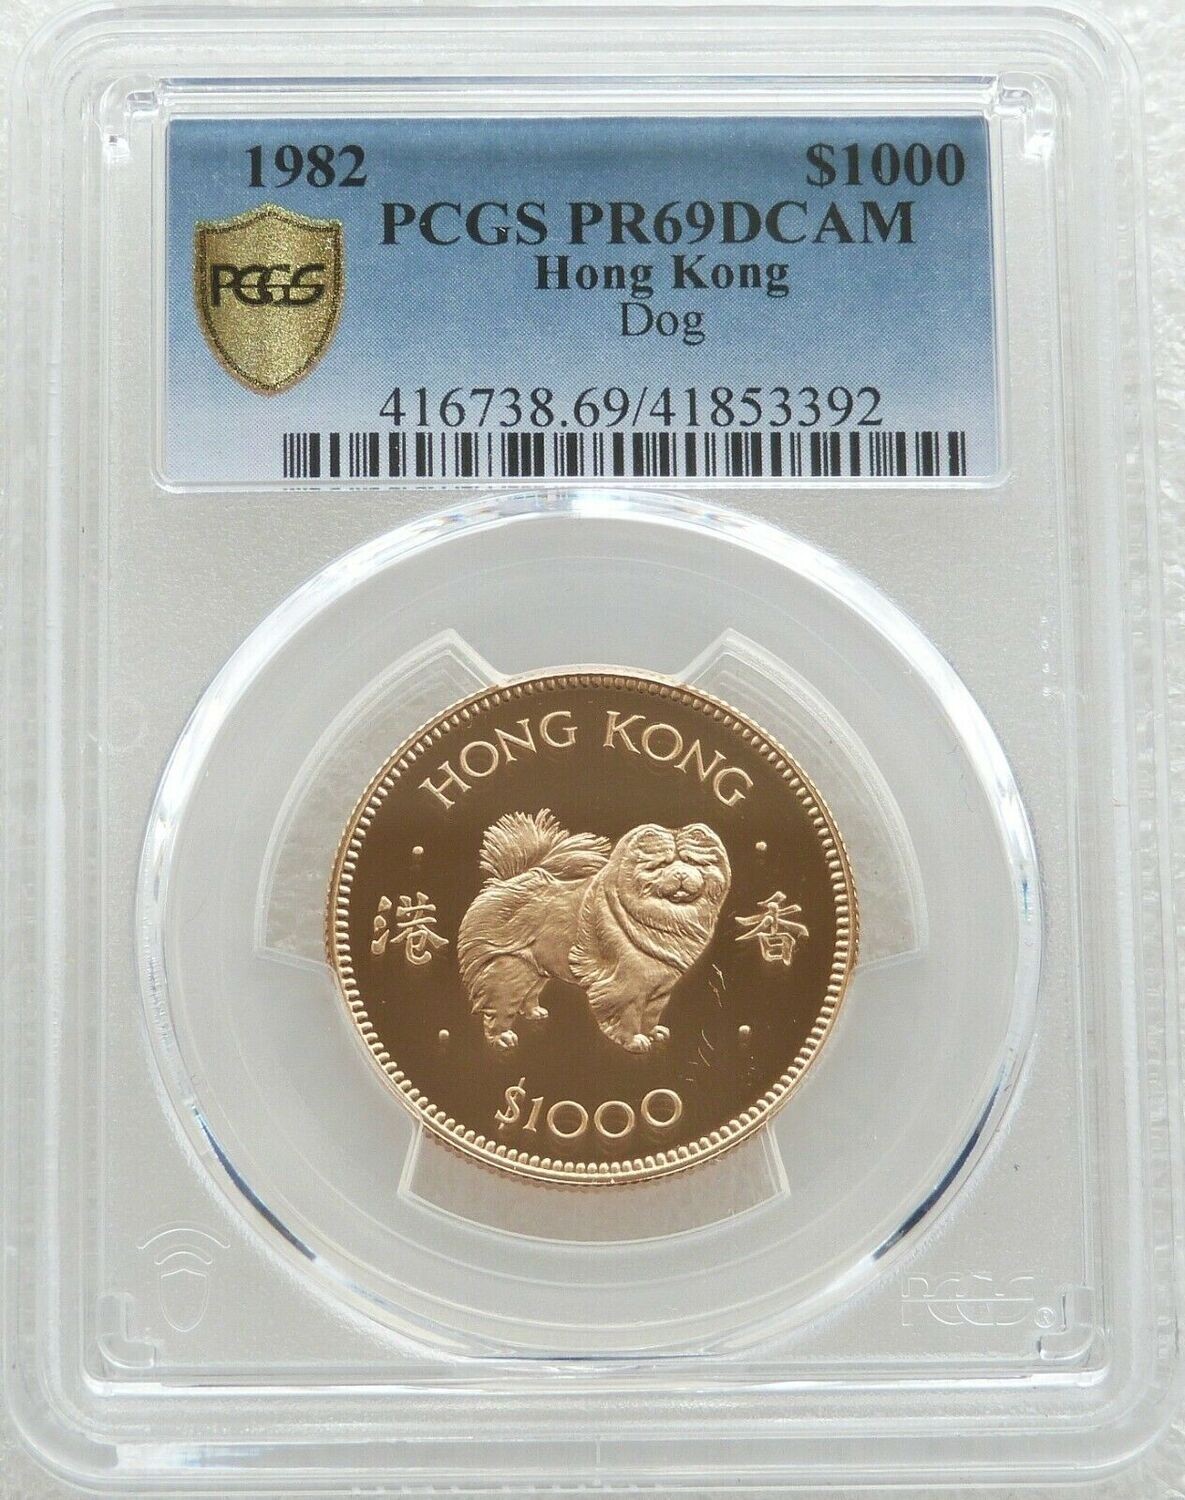 1982 Hong Kong Lunar Dog $1000 Gold Proof Coin PCGS PR69 DCAM